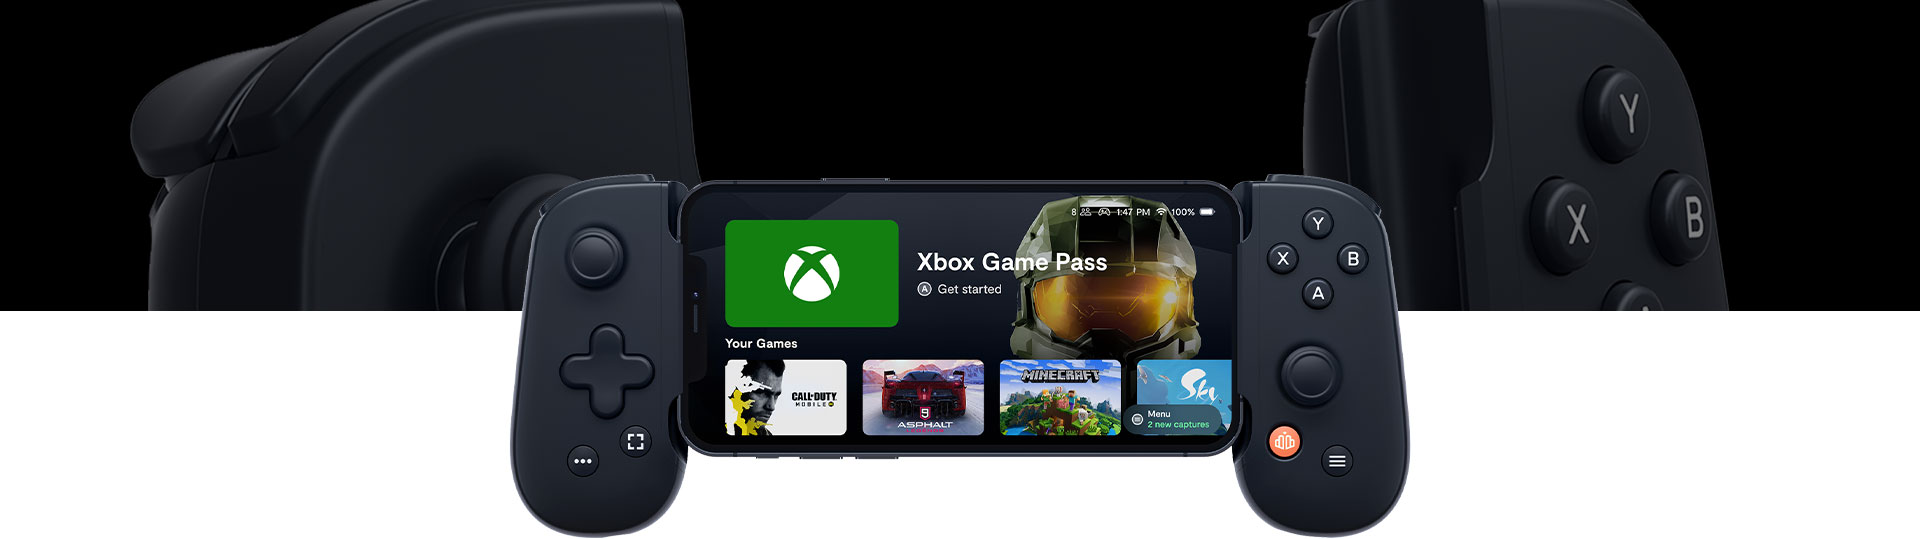 Ecrã principal do Backbone One com o Xbox Game Pass, Call of Duty, Asphalt, Minecraft e Sky.